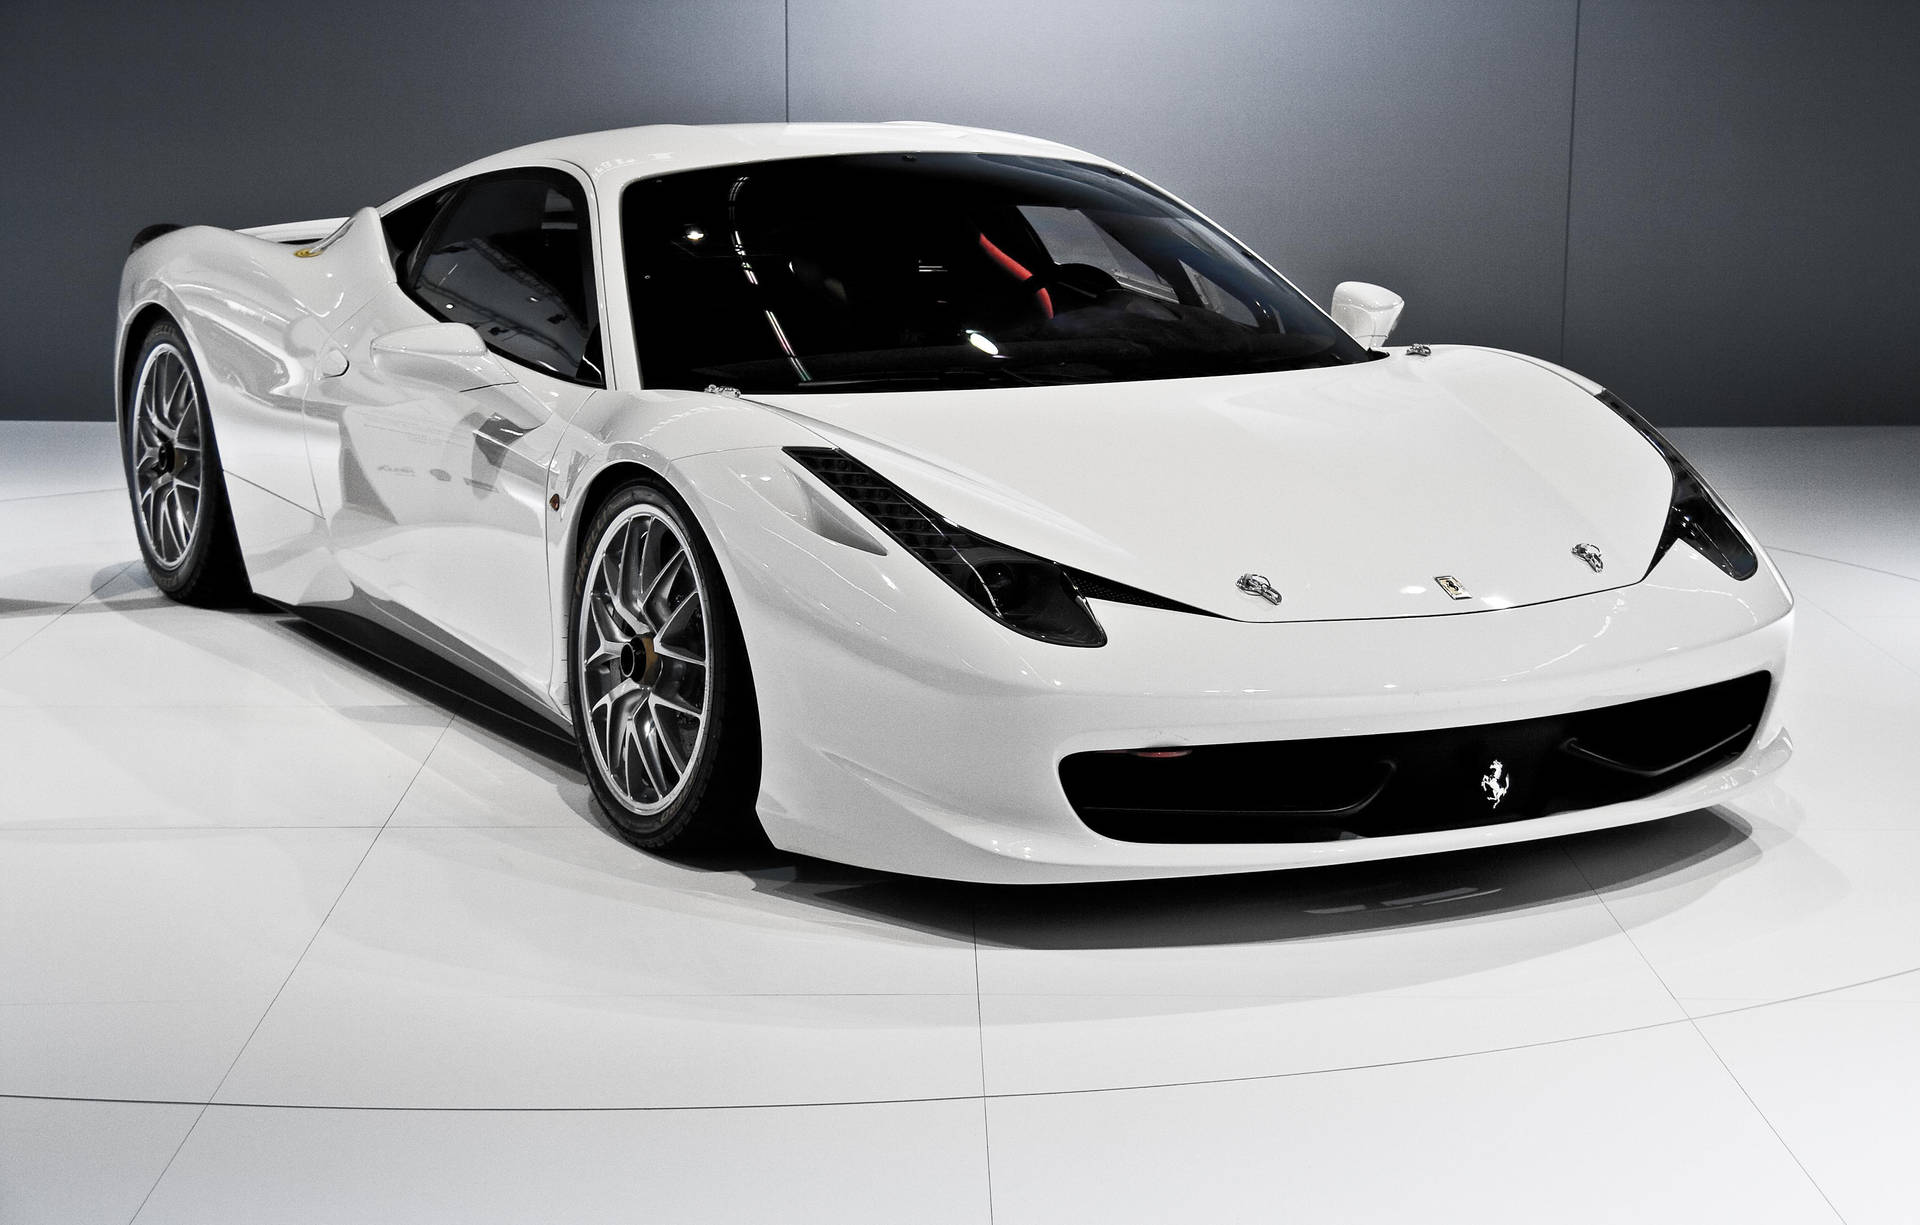 Caption: A Majestic White Ferrari In Full Glory